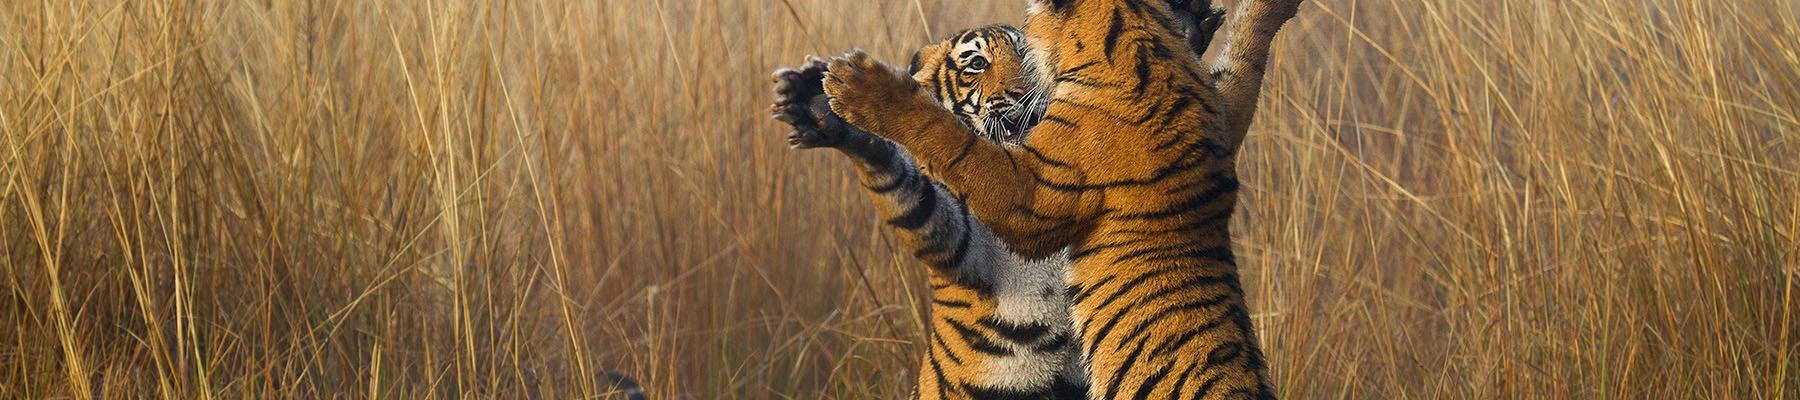 Two tiger cubs Panthera tigris playing © Souvik Kundu / WWF